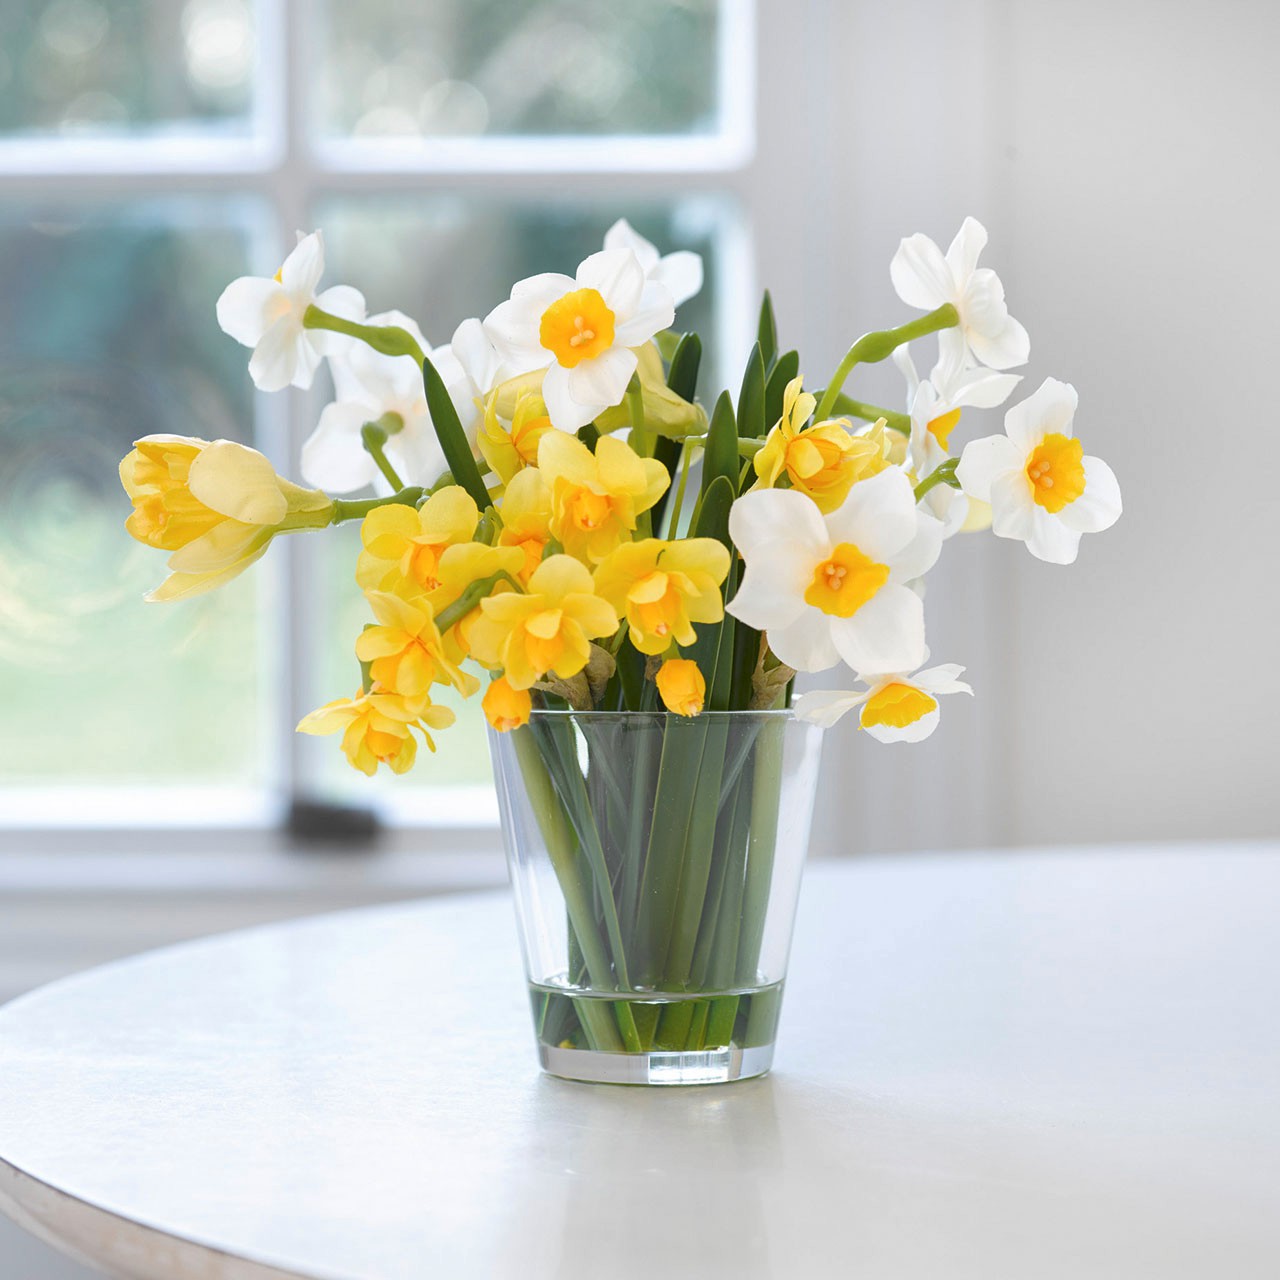 Paperwhite Narcissus Arrangement